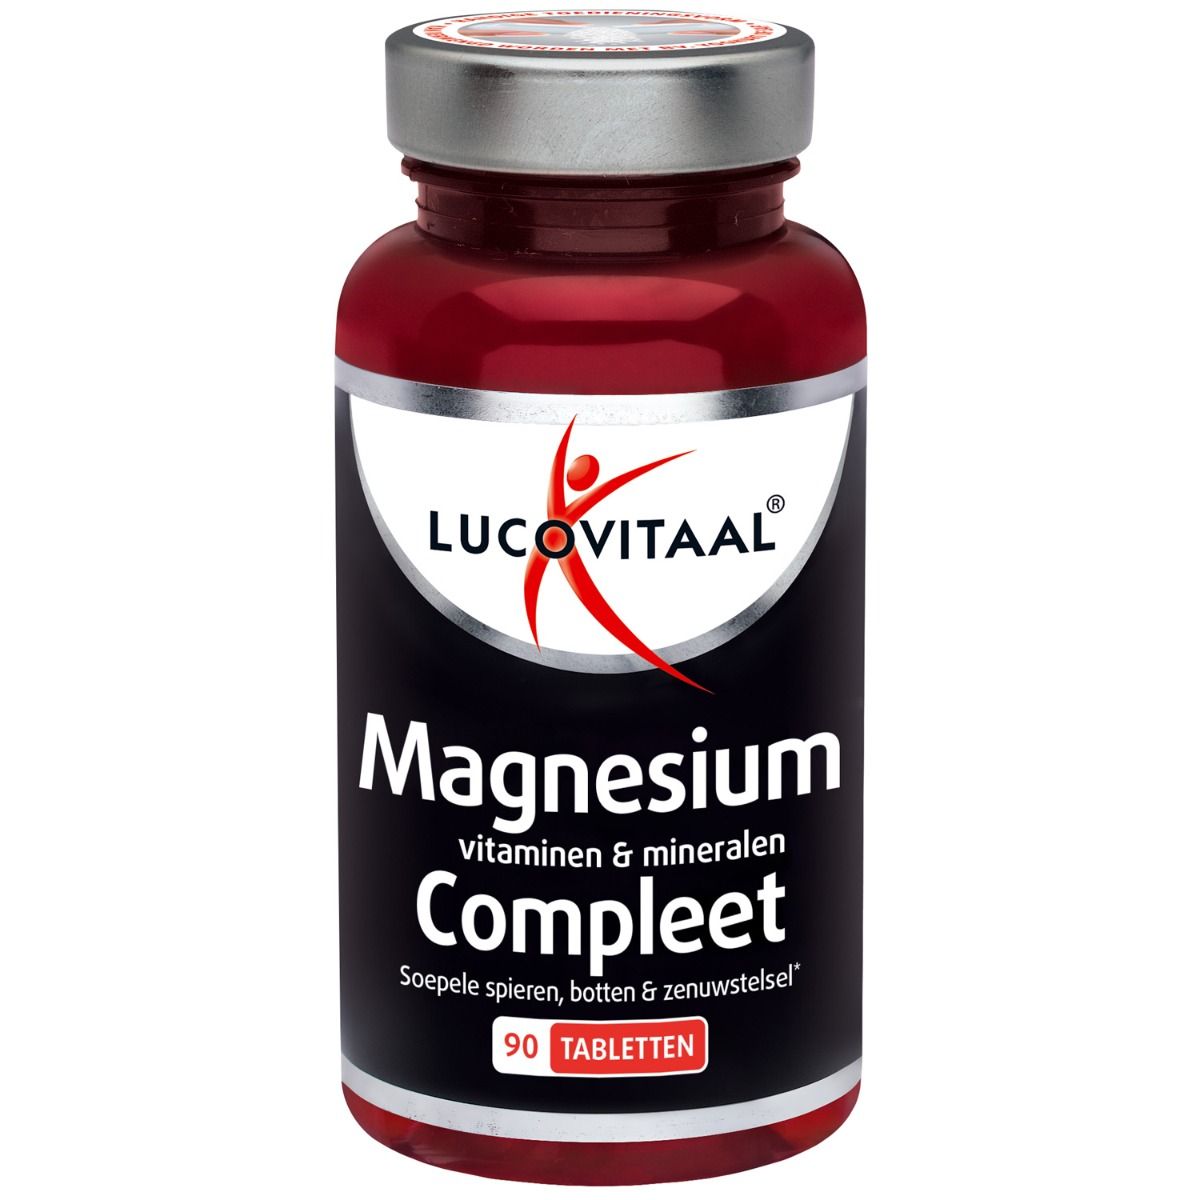 Beyond verteren Oranje Magnesium, Vitaminen & Mineralen Compleet 90 tabletten